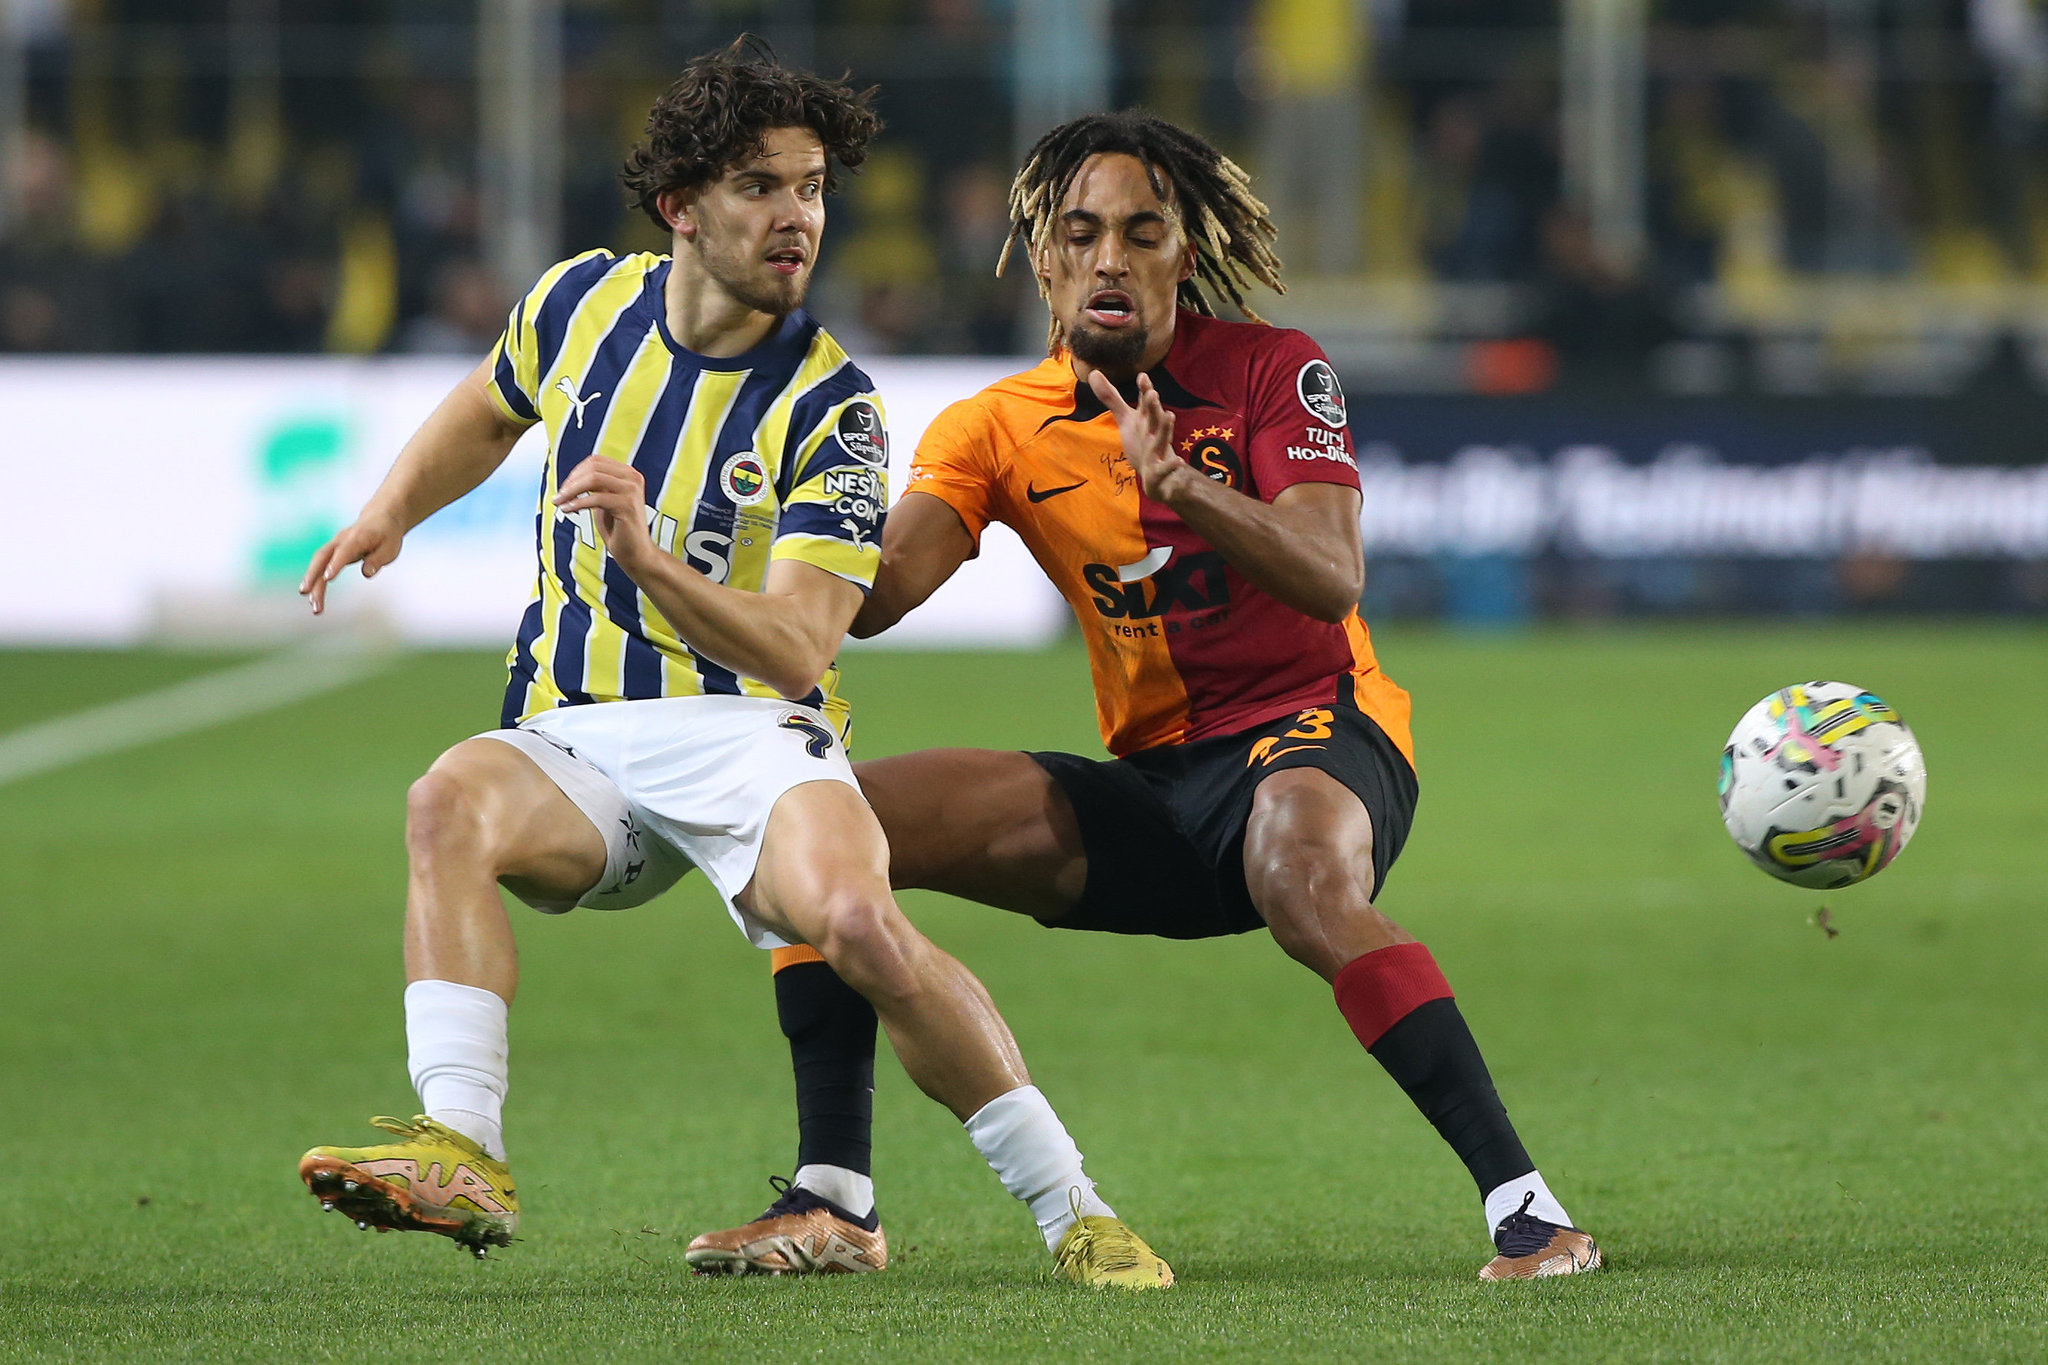 Sacha Boey için olay transfer iddiası! ’Galatasaray satmaya mecbur’